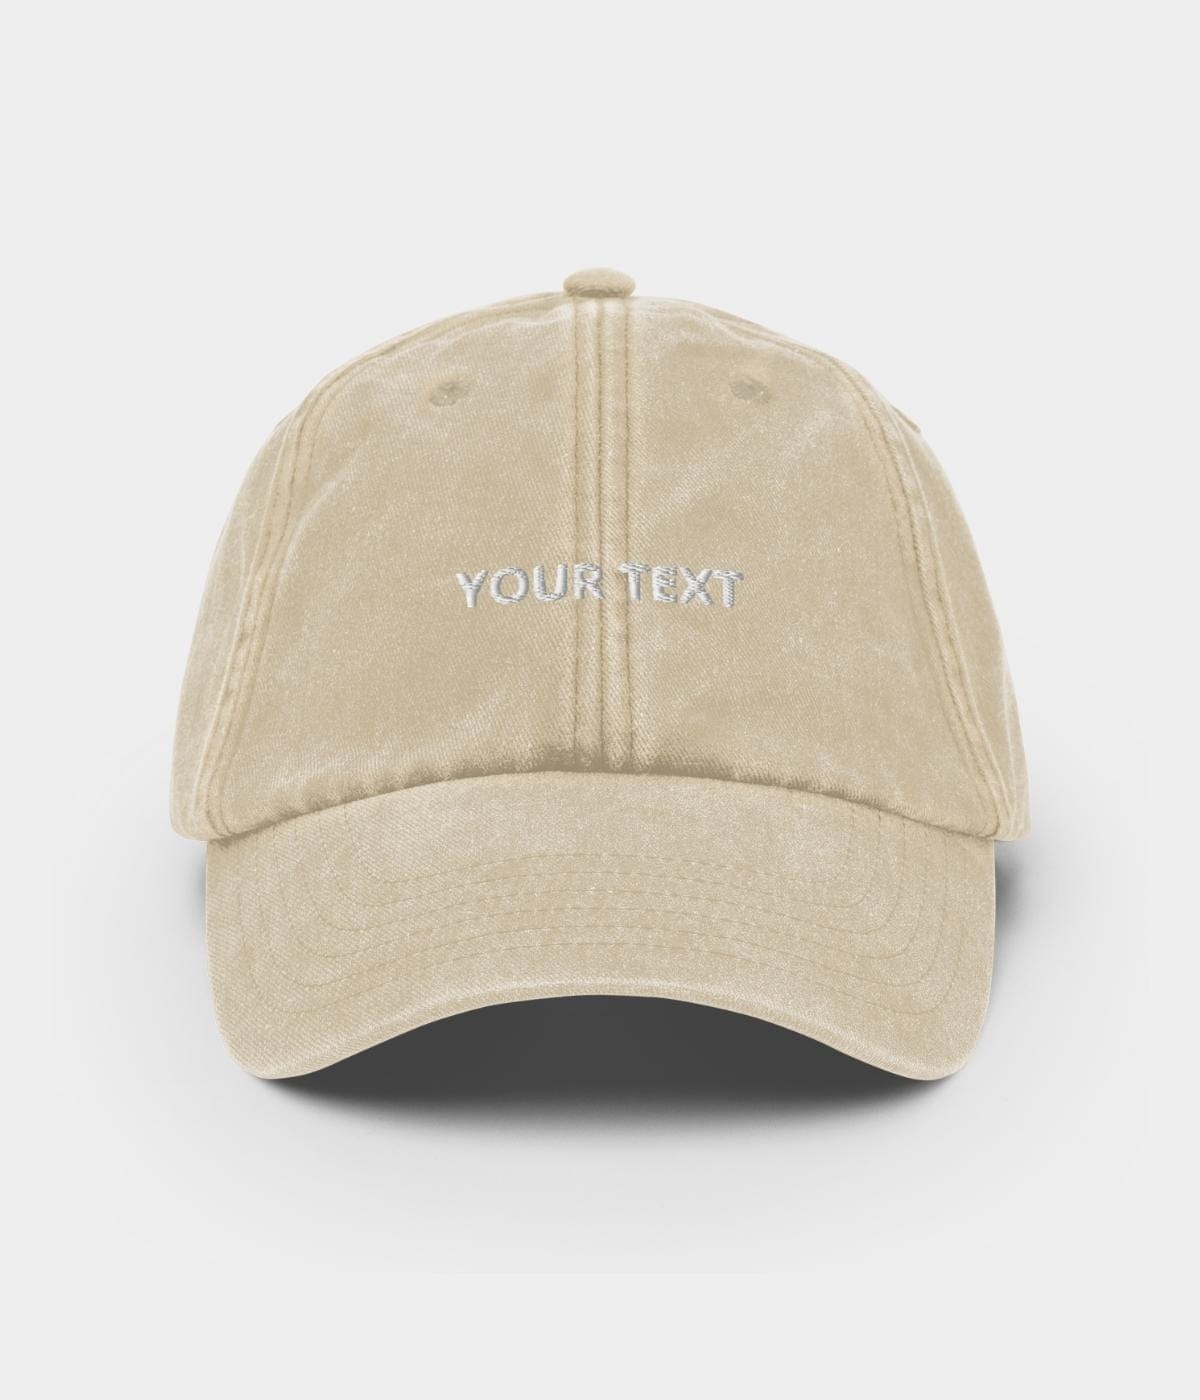 customize cap